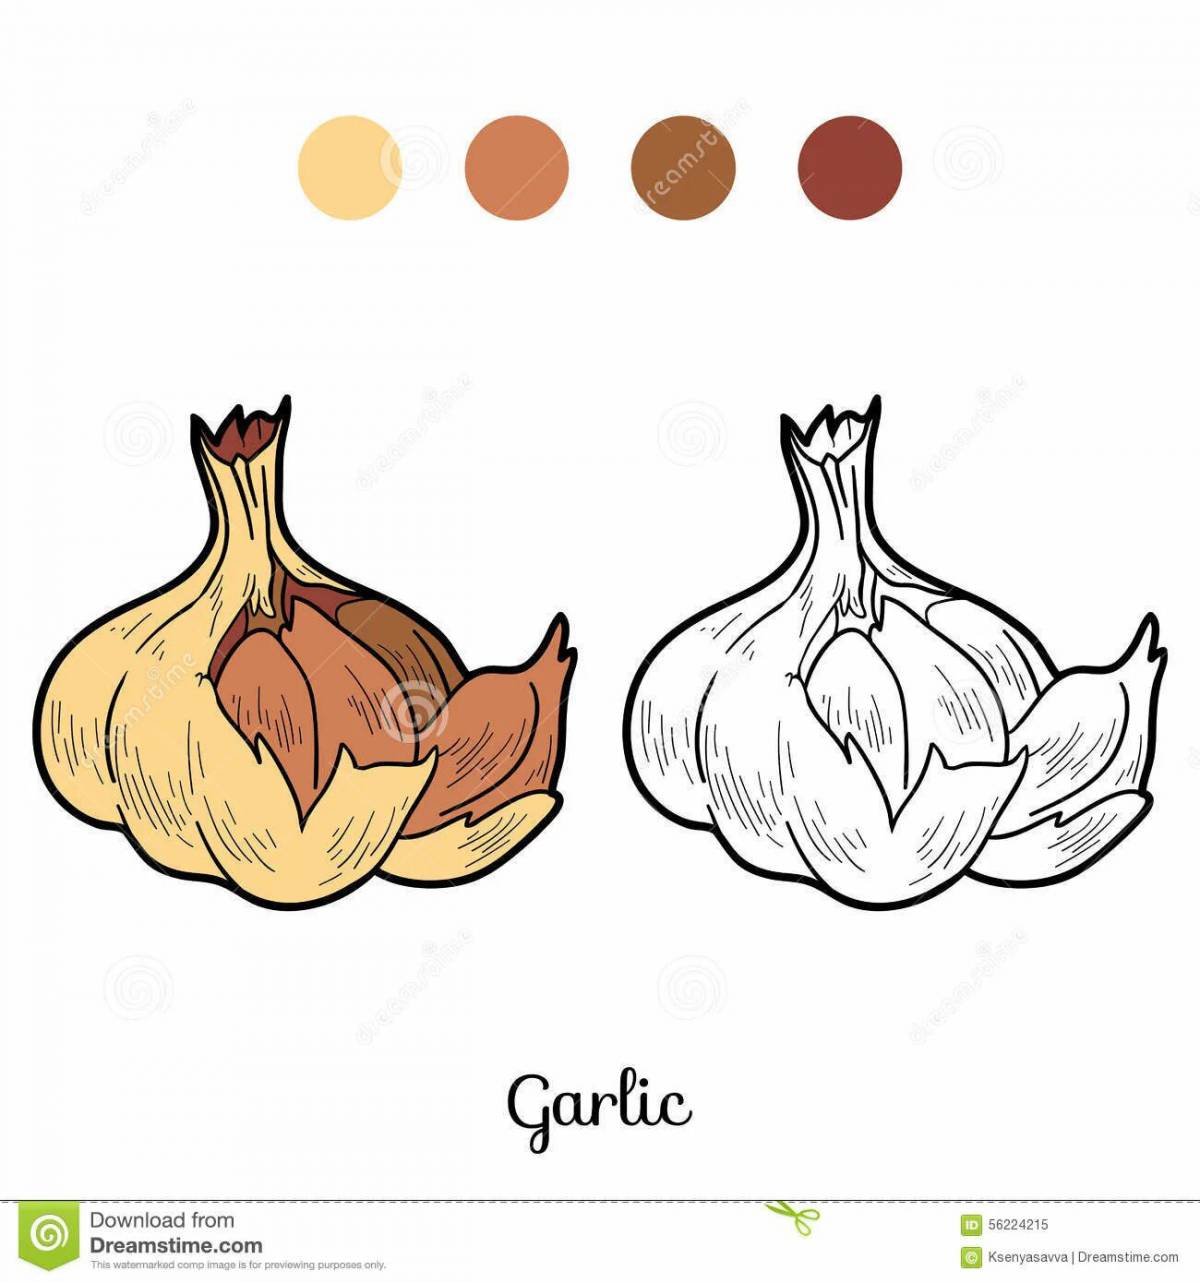 Children's garlic #3